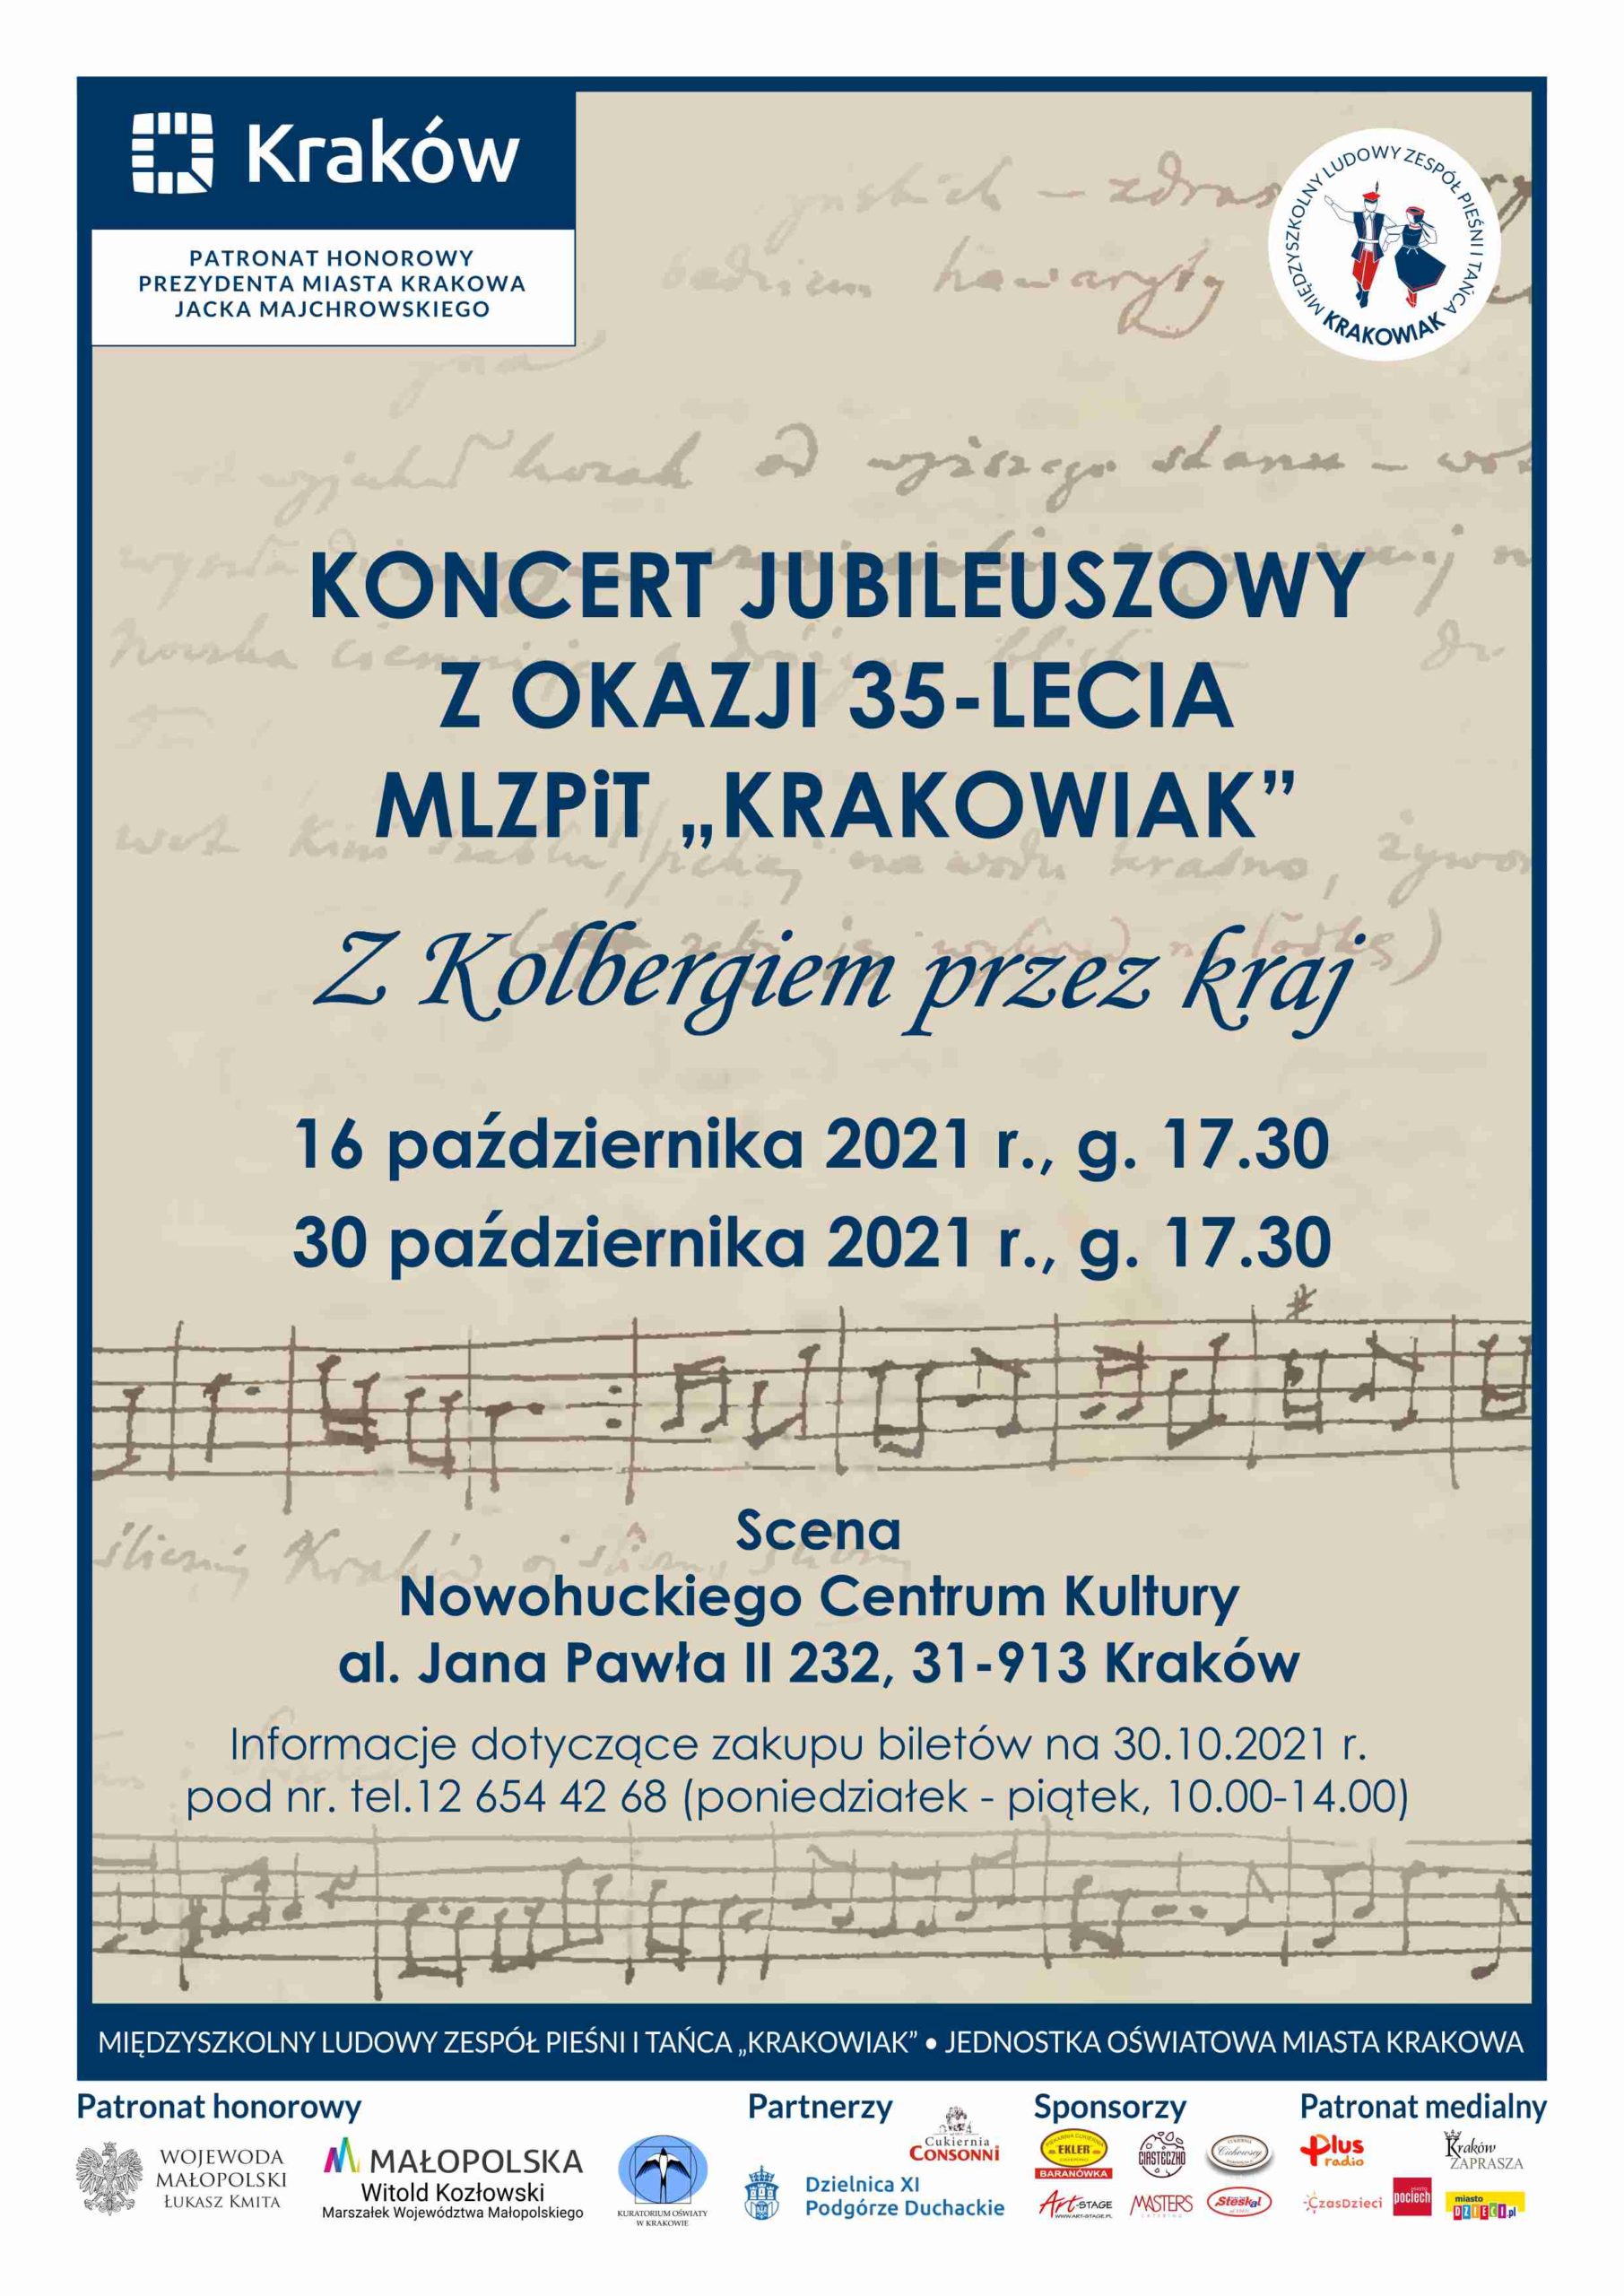 Koncert jubileuszowy z okazji 35-lecia MLZPiT Krakowiak